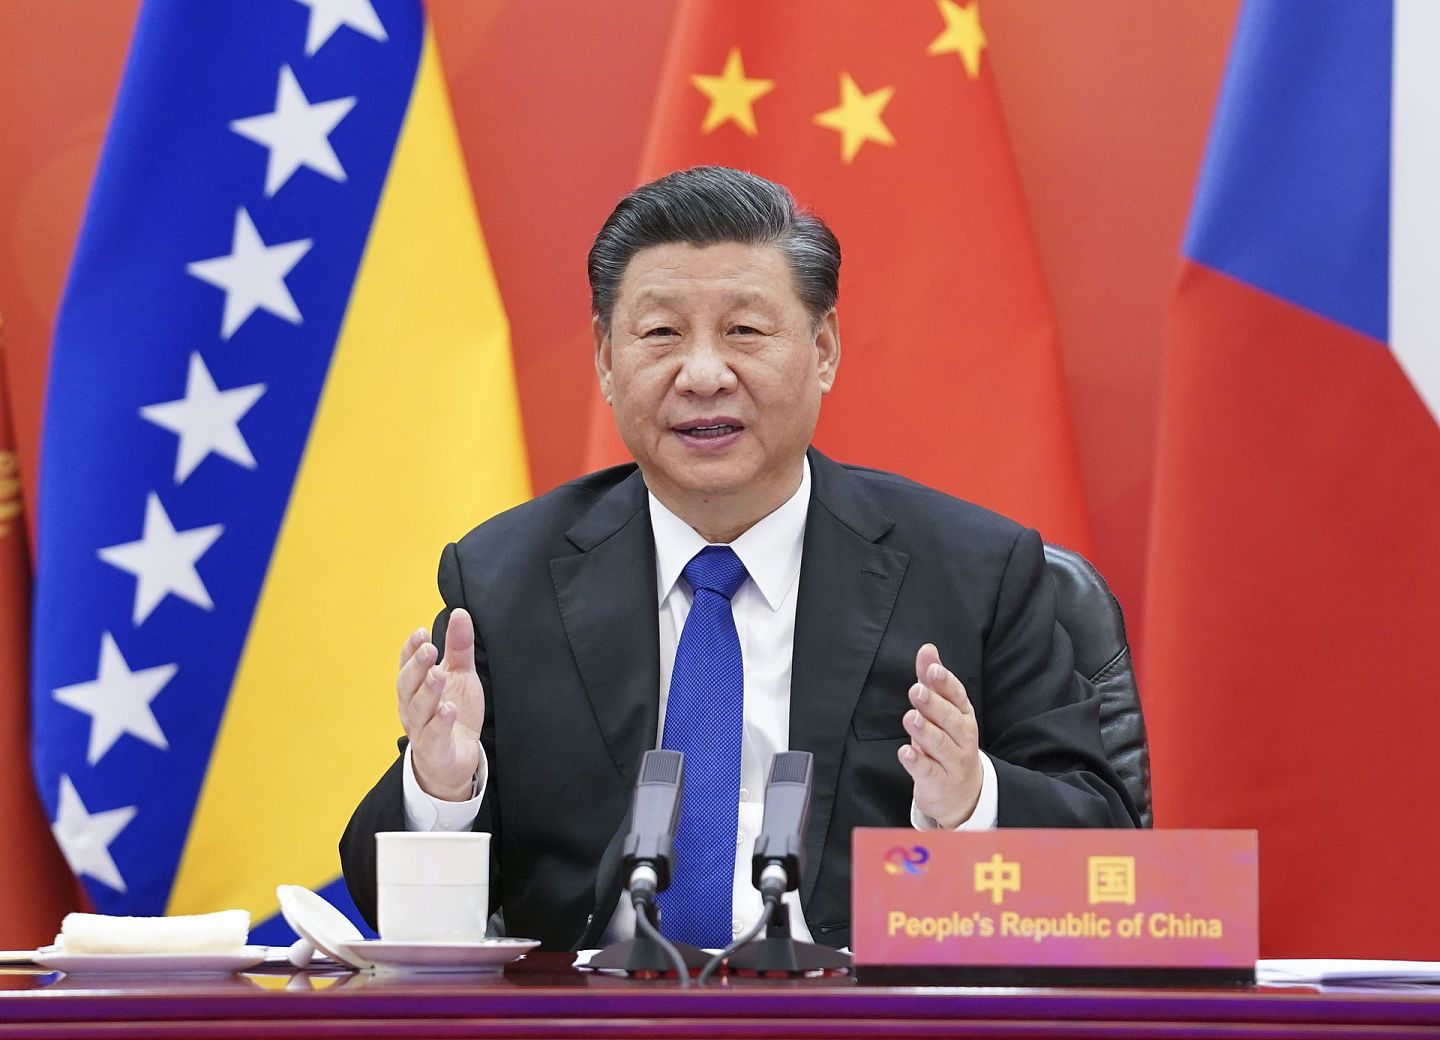 2021年2月9日，中国国家主席习近平在北京以视频方式主持中国-中东欧国家领导人峰会。（新华社）